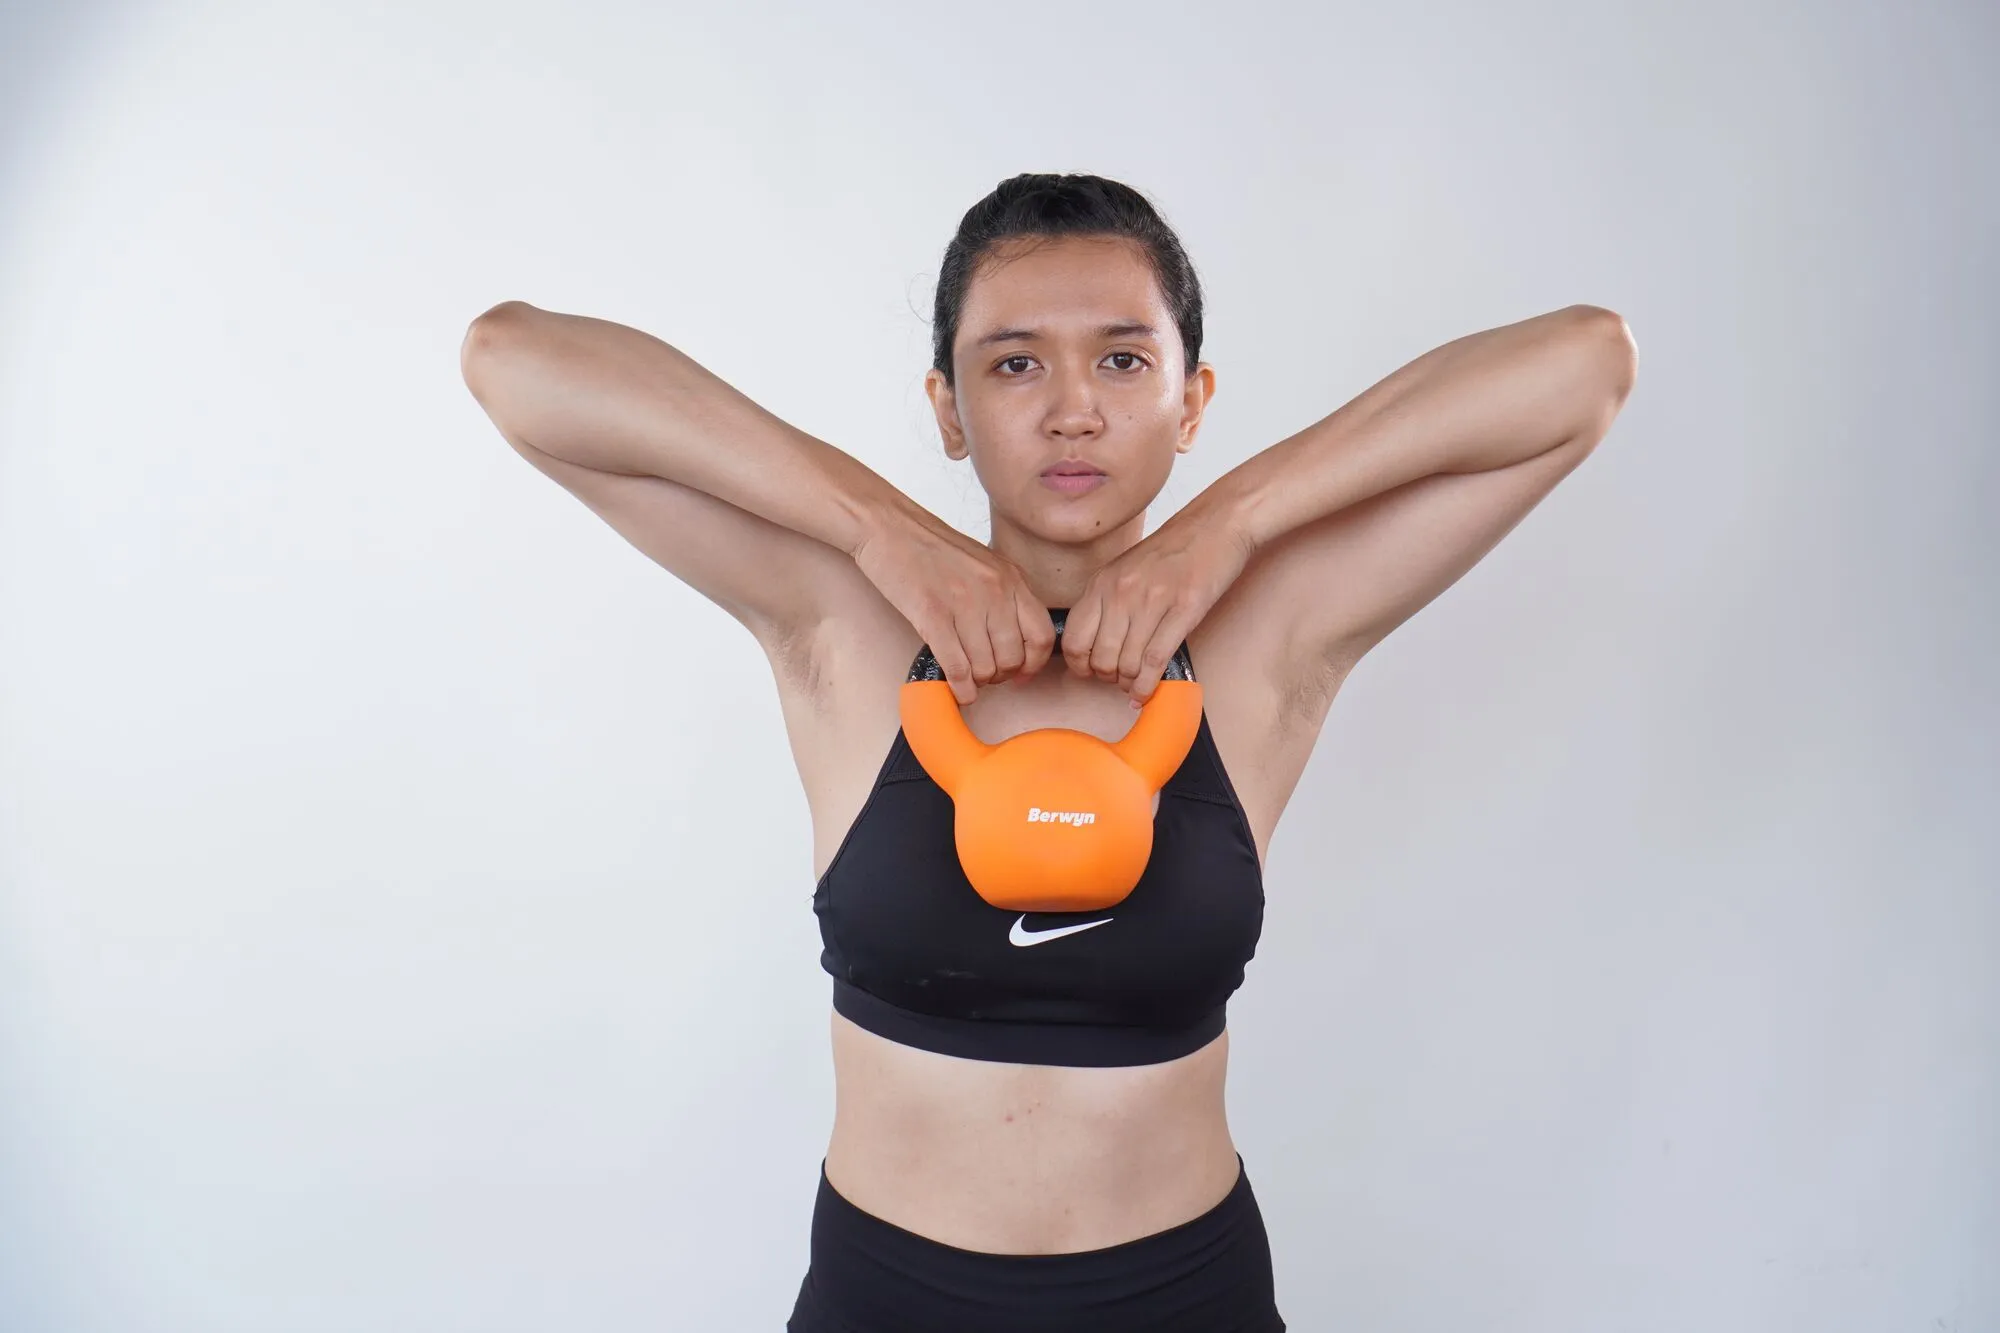 5 тренувань для жінок, які допоможуть зберігати форму. Відео

